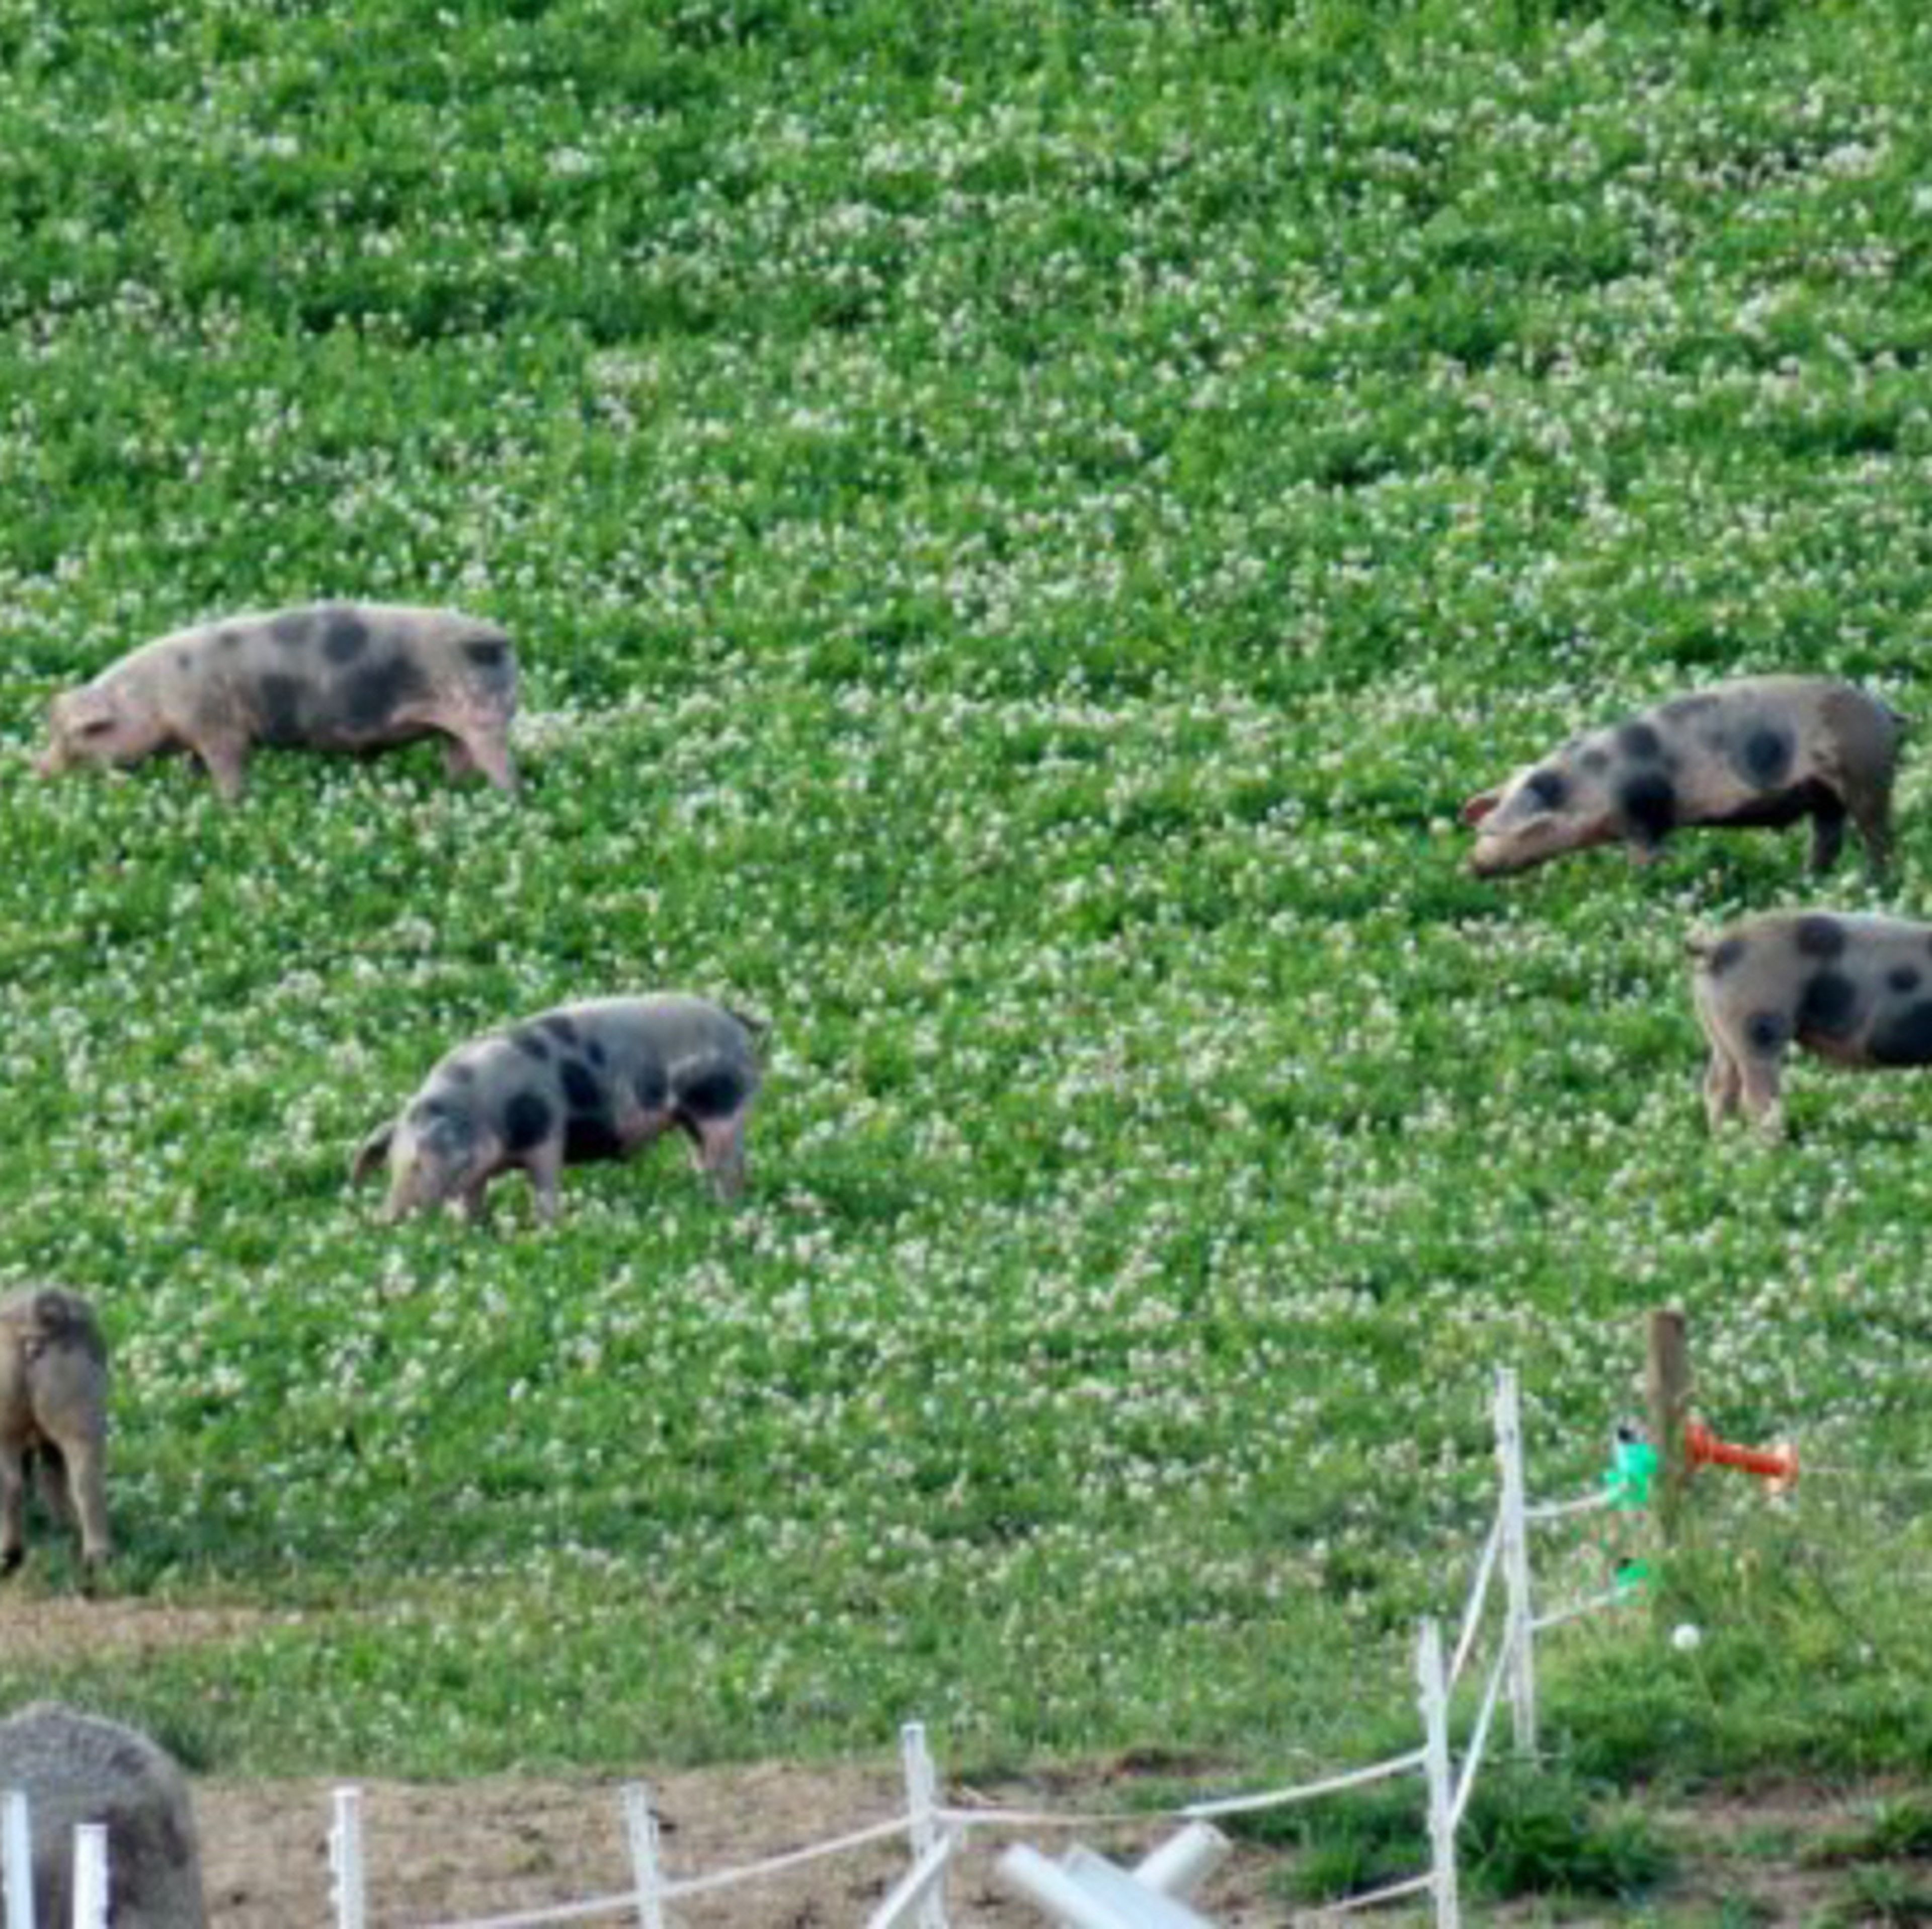 Meine Schweine wachsen auf ca. 1 ha. freilaufend auf, Sommer wie Winter im freien, das Futter stammt aus eigenem Bio-Anbau, nix Gensoja u. sonstigem Scheiß u. wenn sie wollen können die Oinkies am Waldrand Eicheln fressen. Sicher hat nicht jeder einen Zugang zu solchen paradiesisch lebenden Schweinen, aber wer sucht.....der findet. Es gibt genug auch nicht-Bio-Bauern, die ihre Schweine fair i. Freilauf aufziehen, ohne Spaltböden, ohne Quälerei - ihr findet immer was im Umkreis v. 20-30 km 